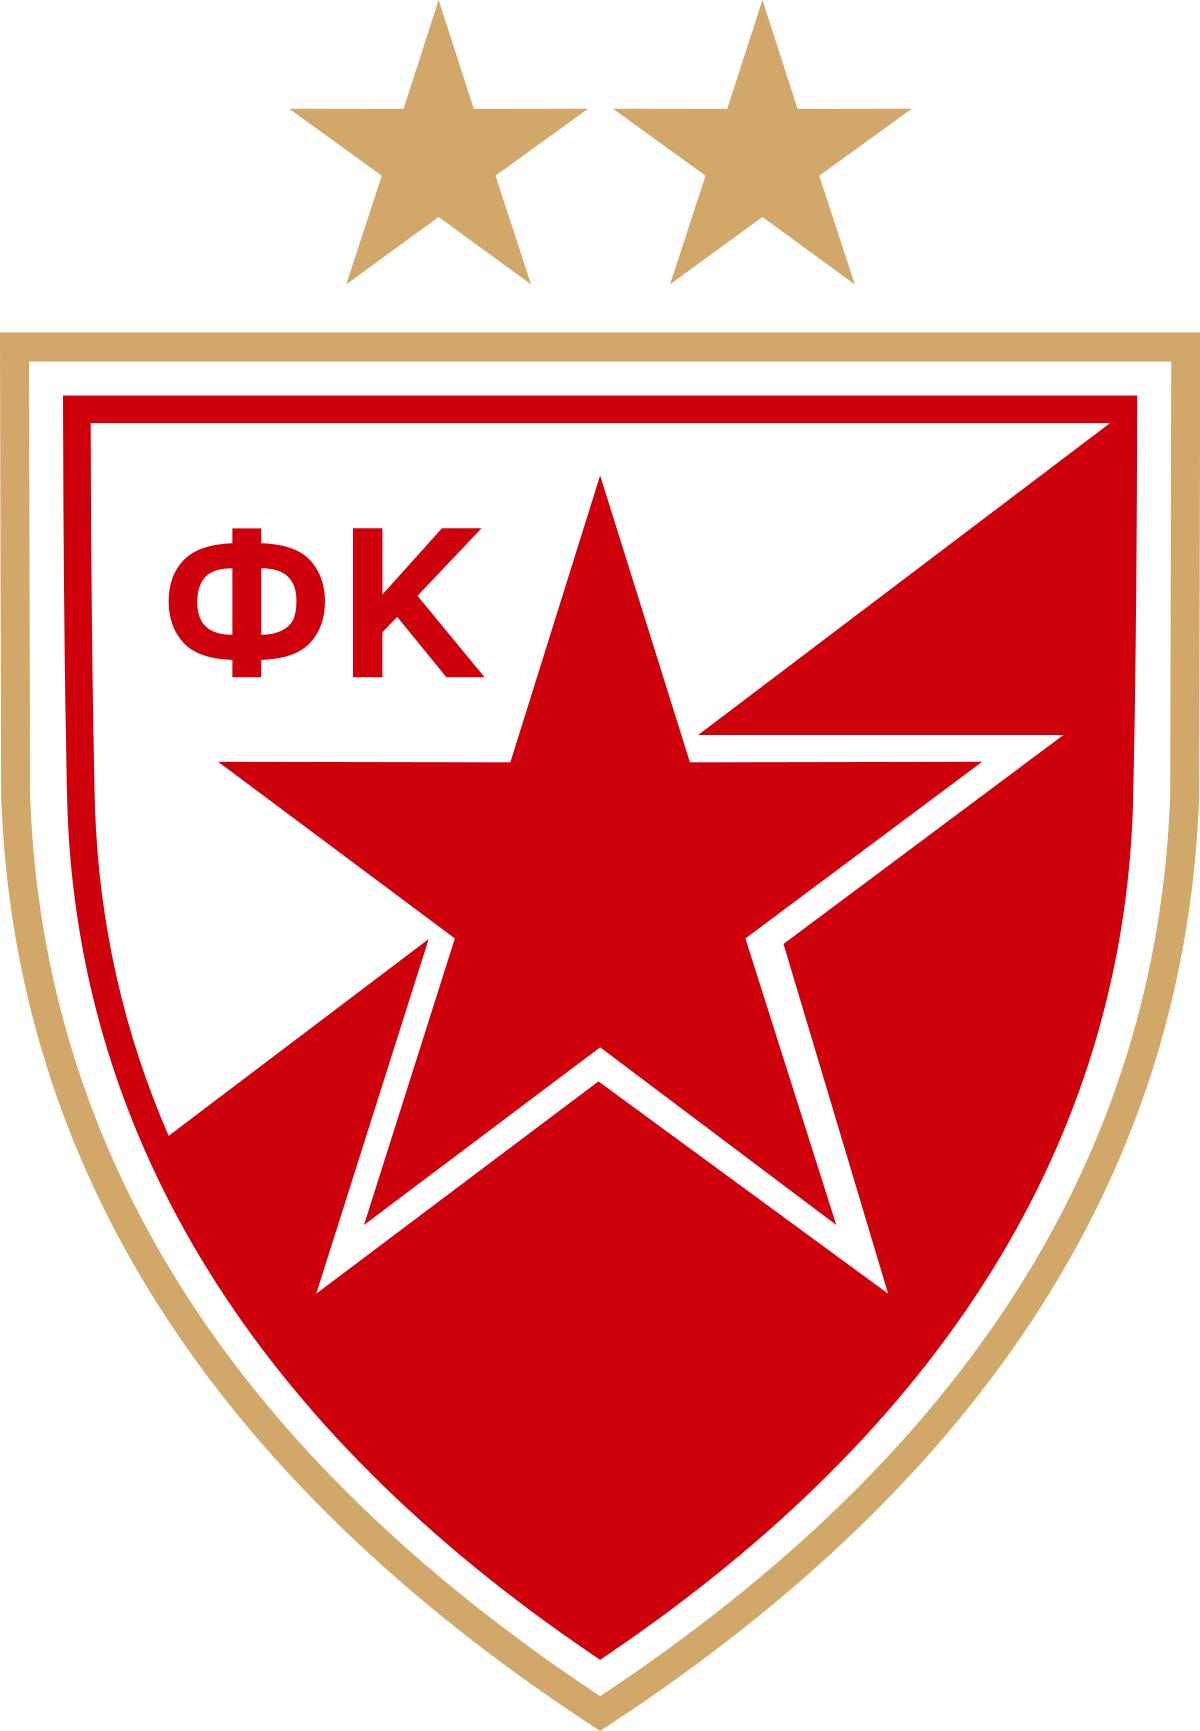 Equipo premiado con dos entradas para poder ver de forma gratuita y en directo, el partido de Euroliga entre Baskonia y Estrella Roja de Belgrado.